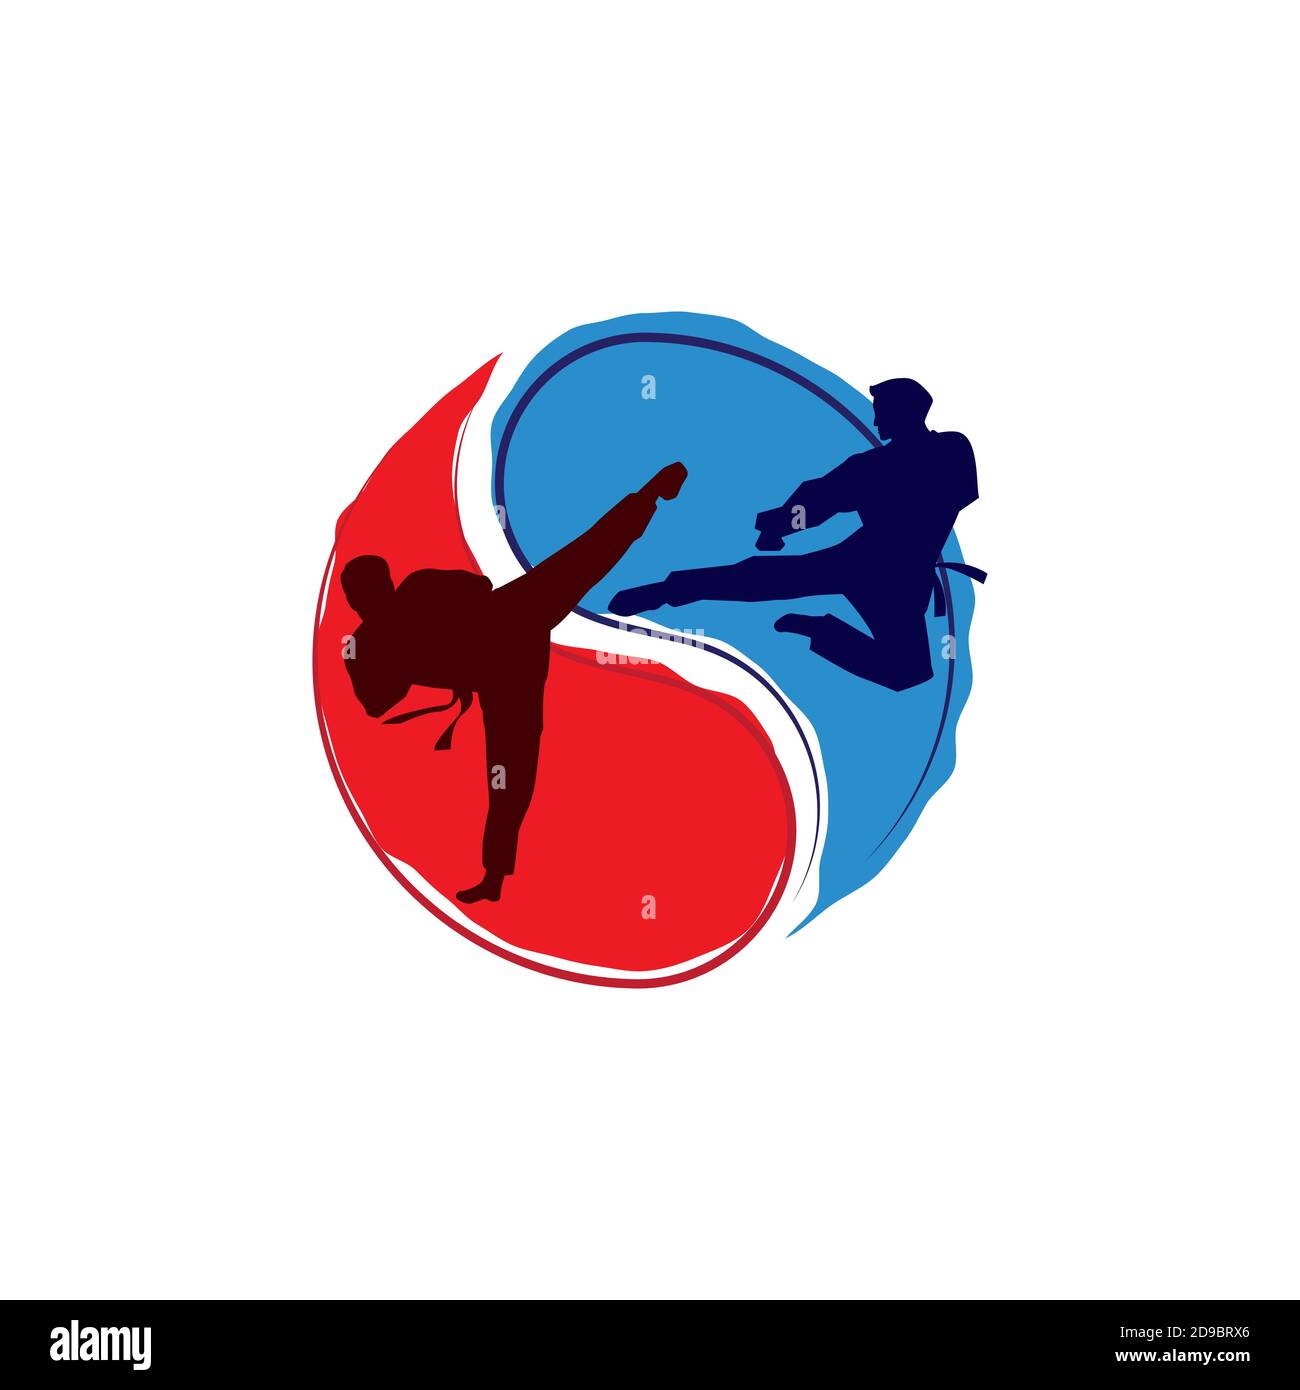 Modèle d'illustration de la conception d'icônes de Taekwondo Vector Illustration de Vecteur